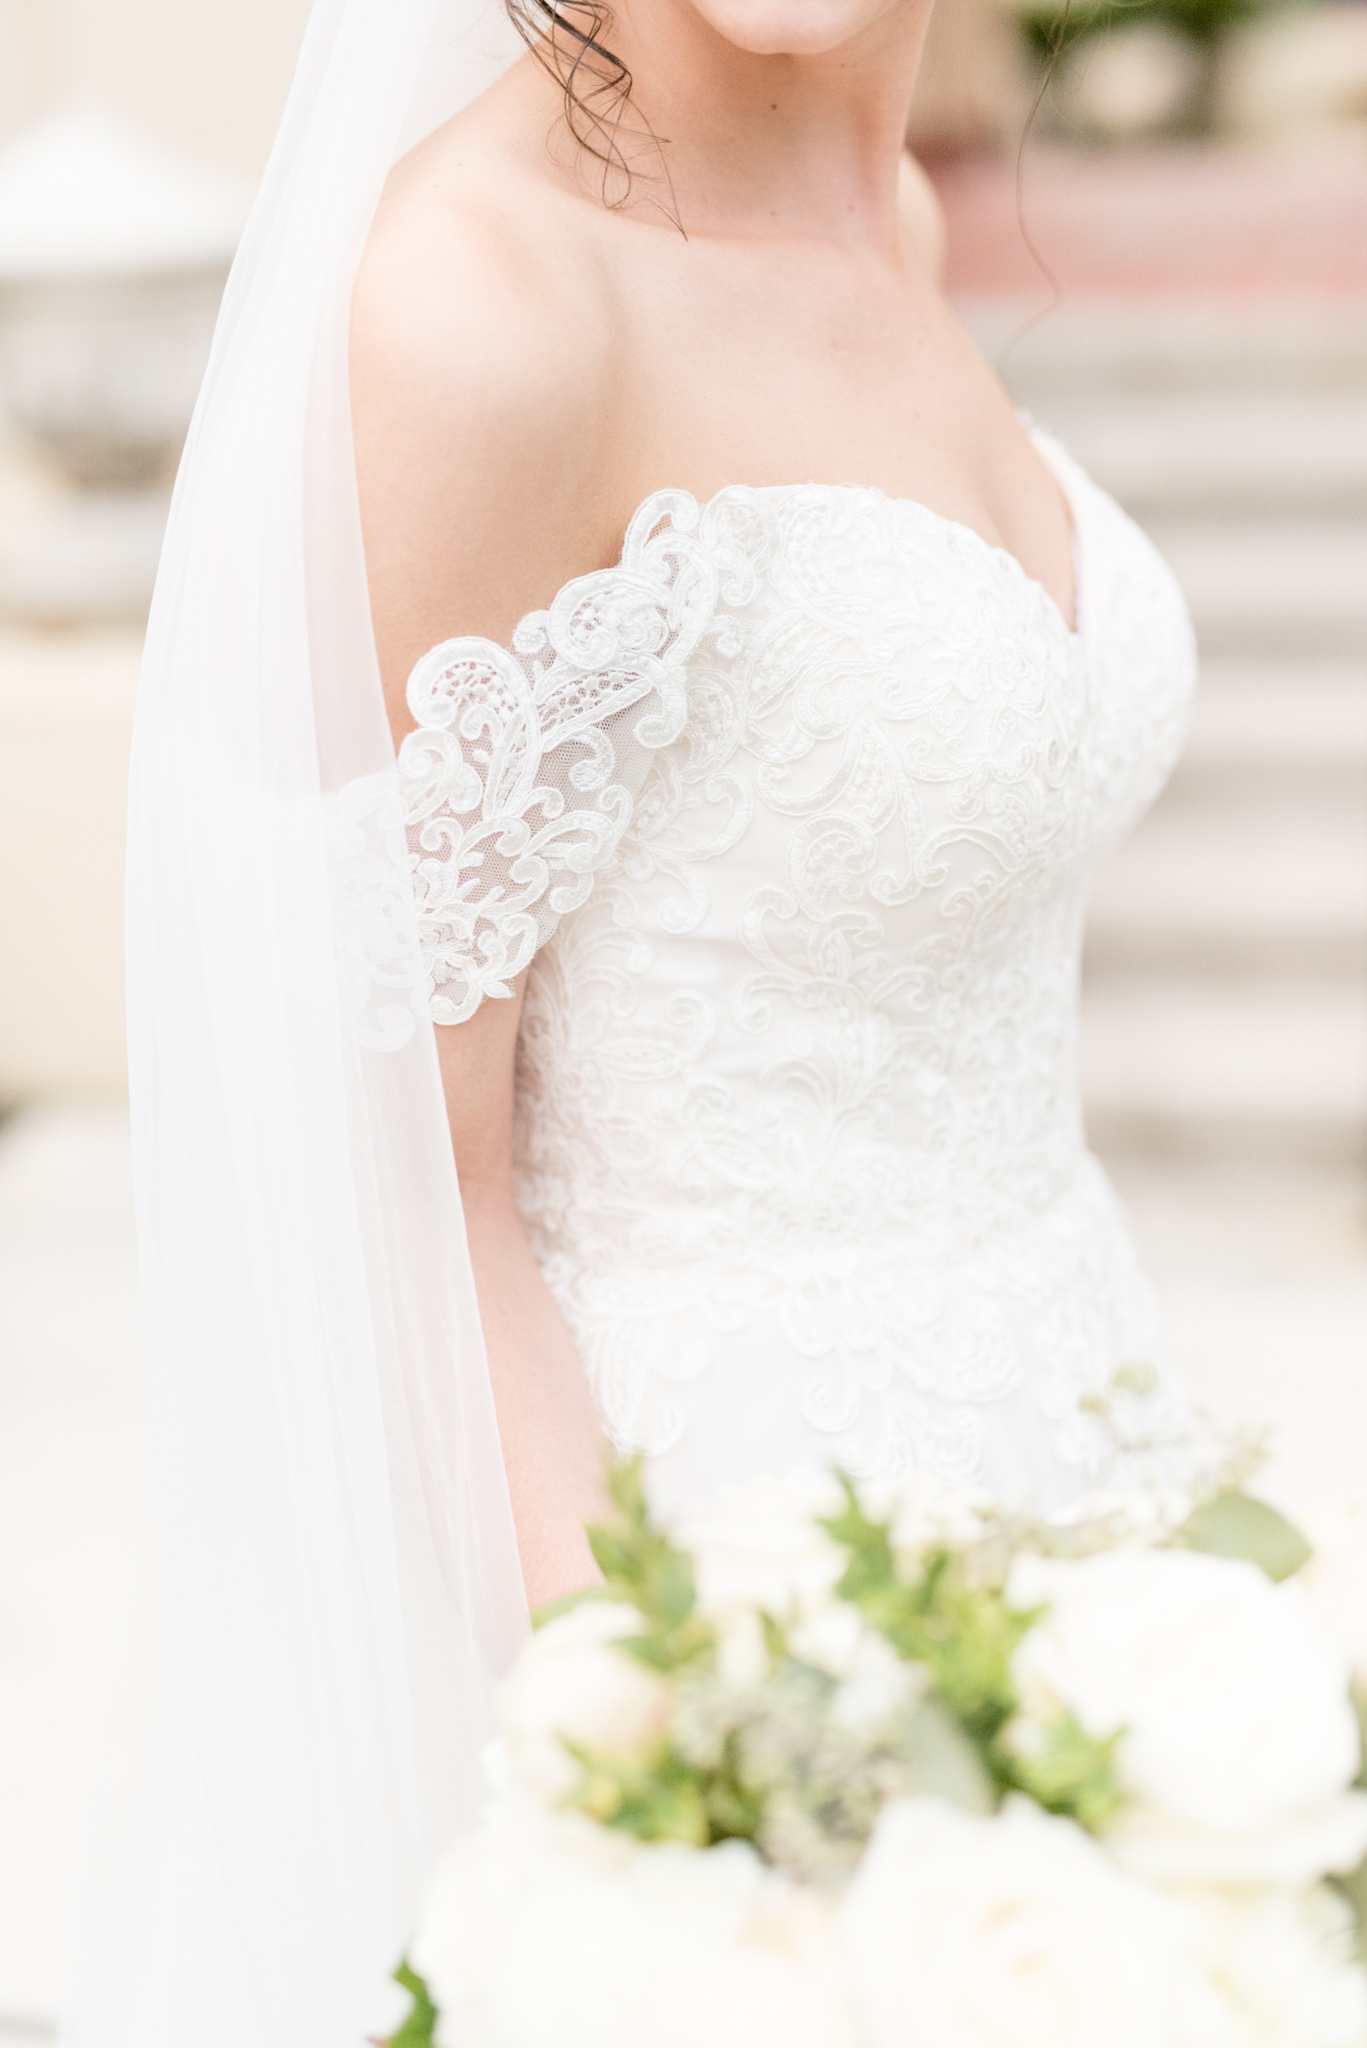 Bride's wedding grown lace details.